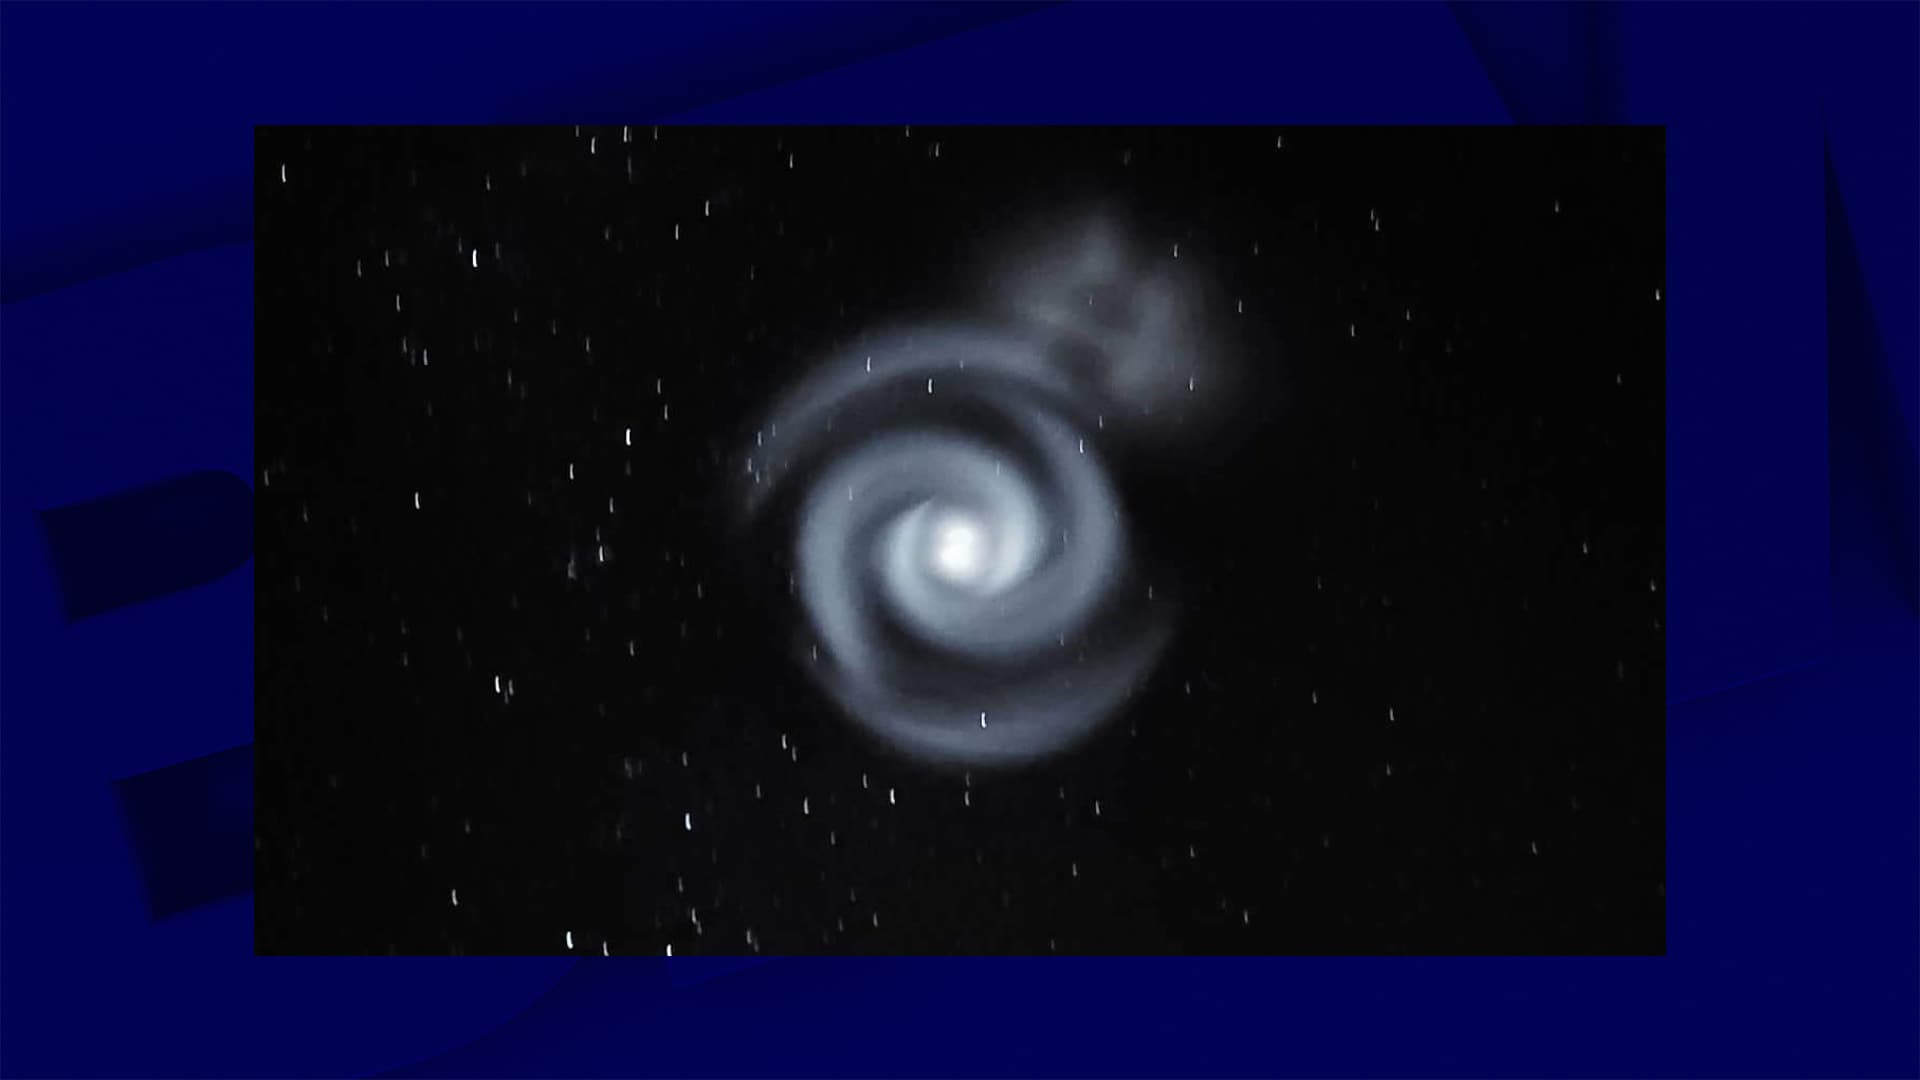 Am Himmel von Neuseeland wurde eine seltsam leuchtende Spirale beobachtet